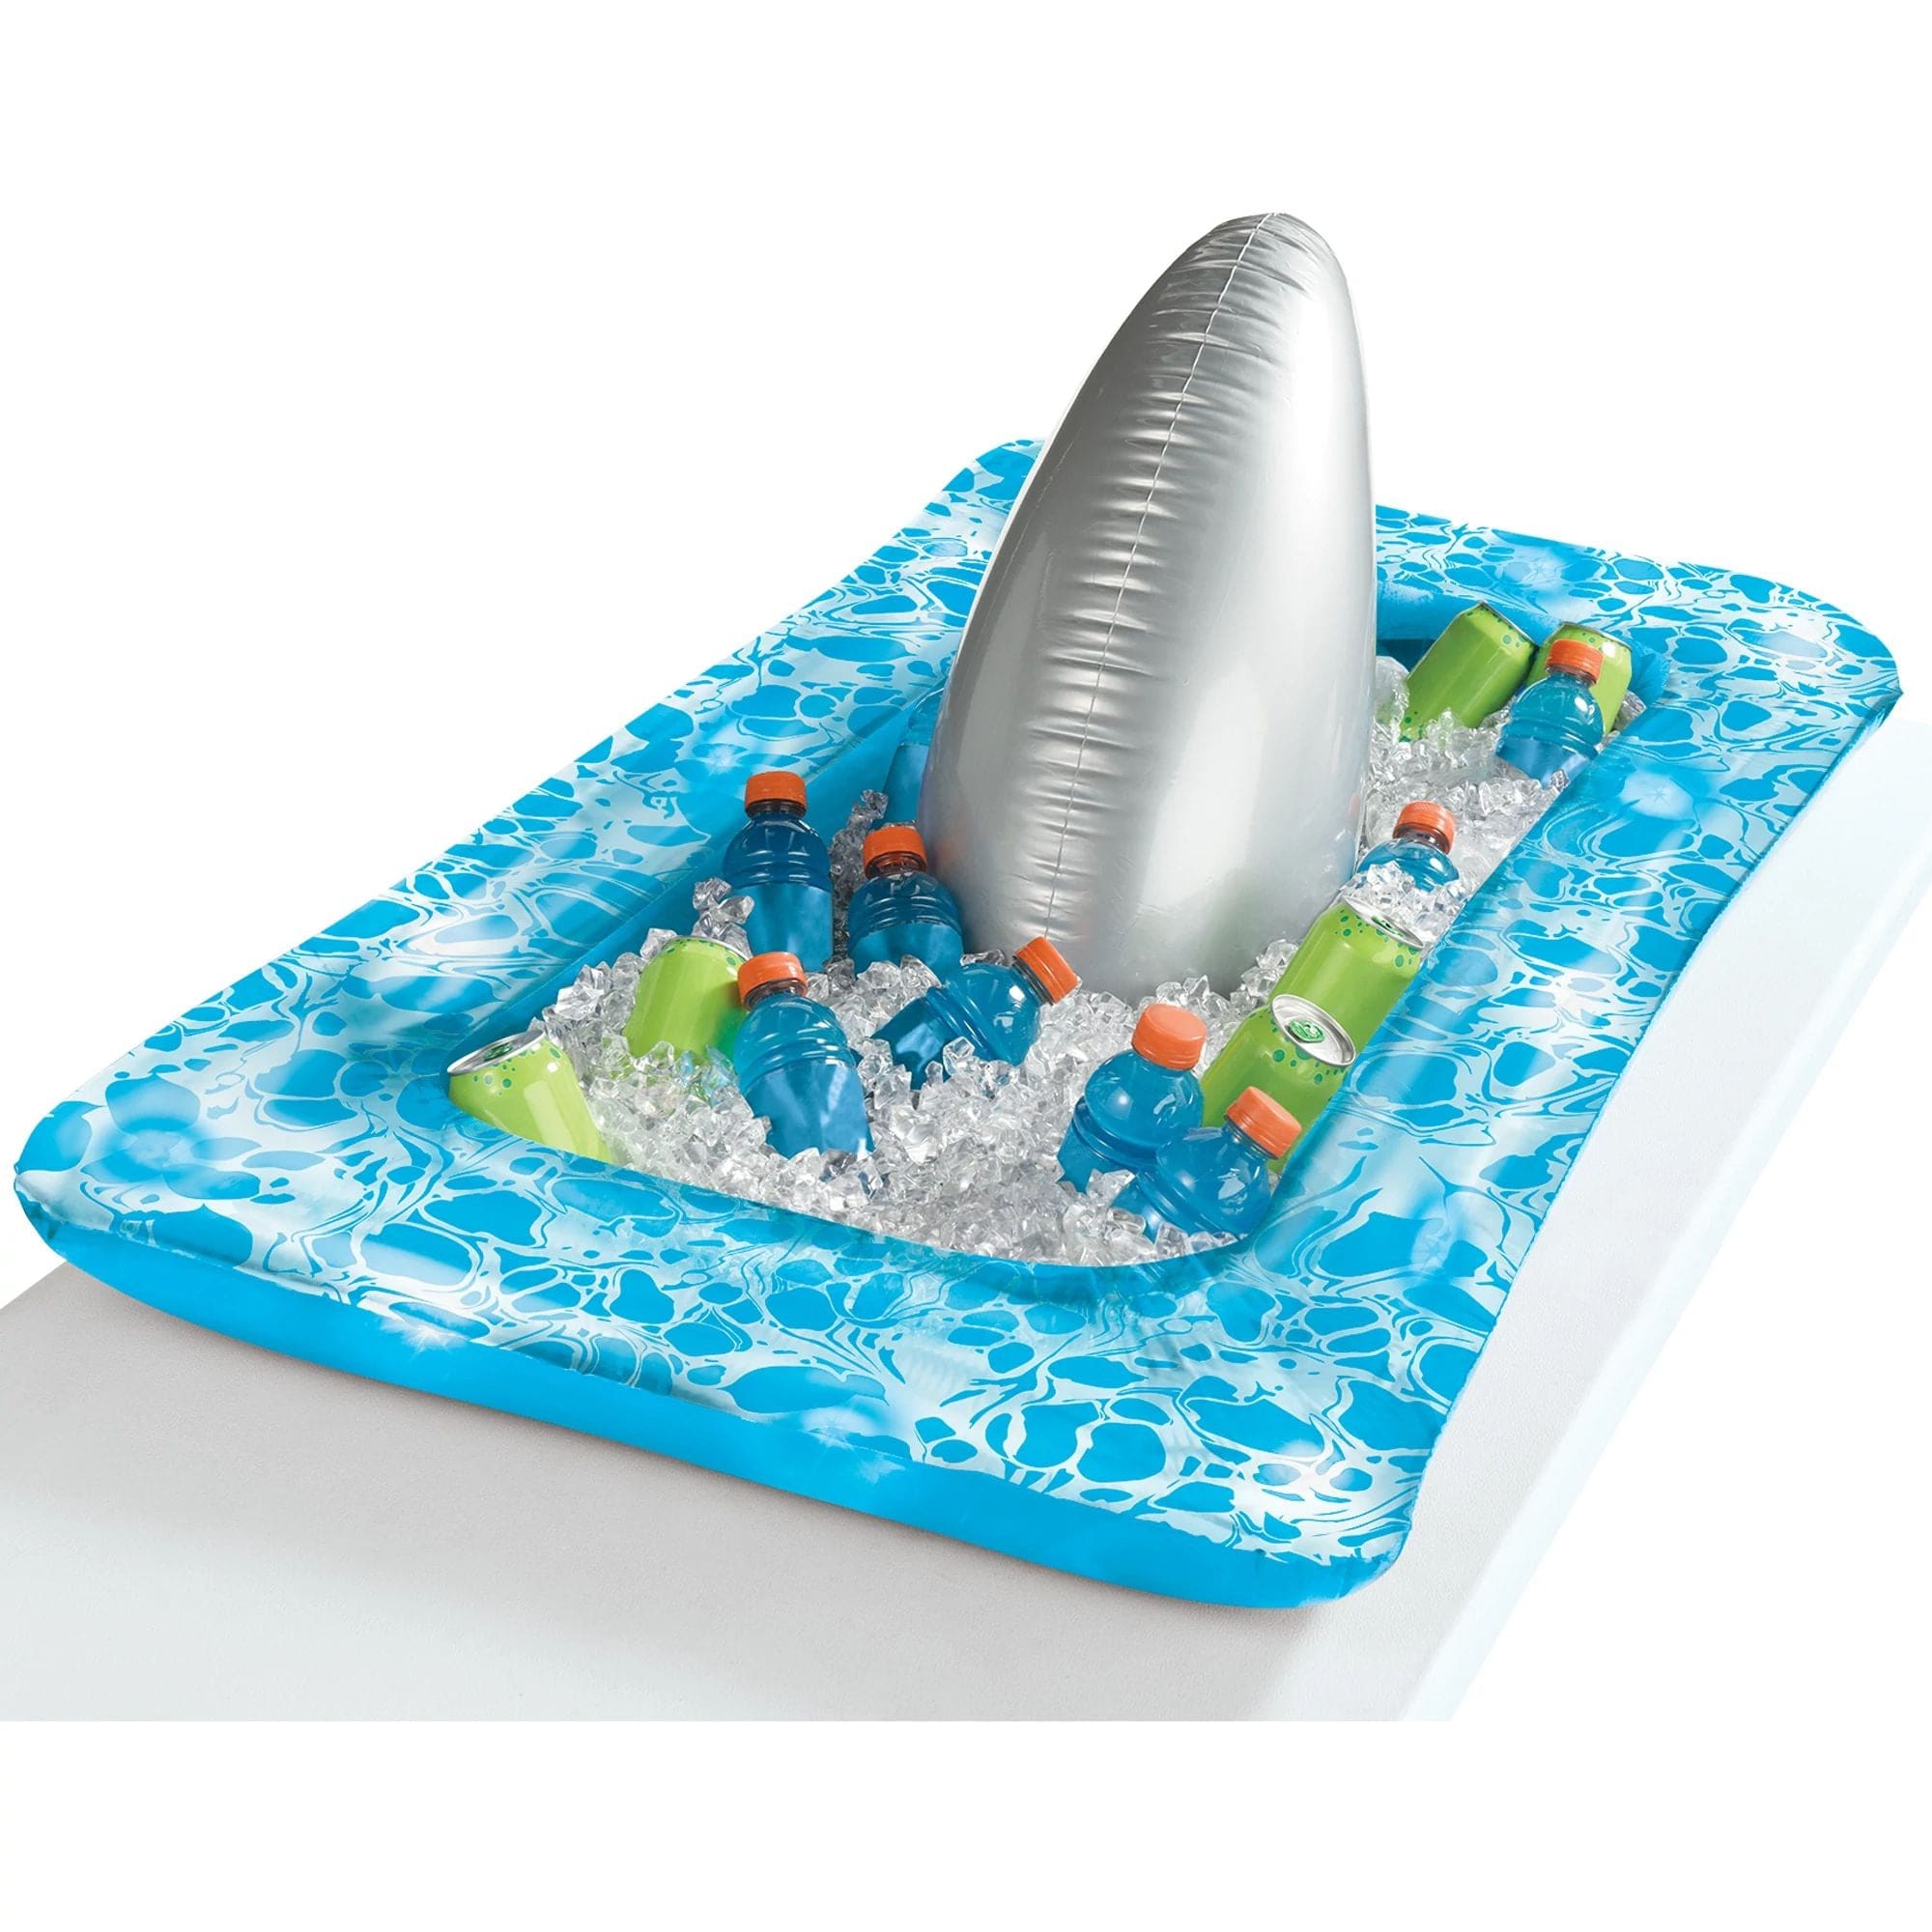 Amscan LUAU Shark Fin Light Up Inflatable Buffet Cooler